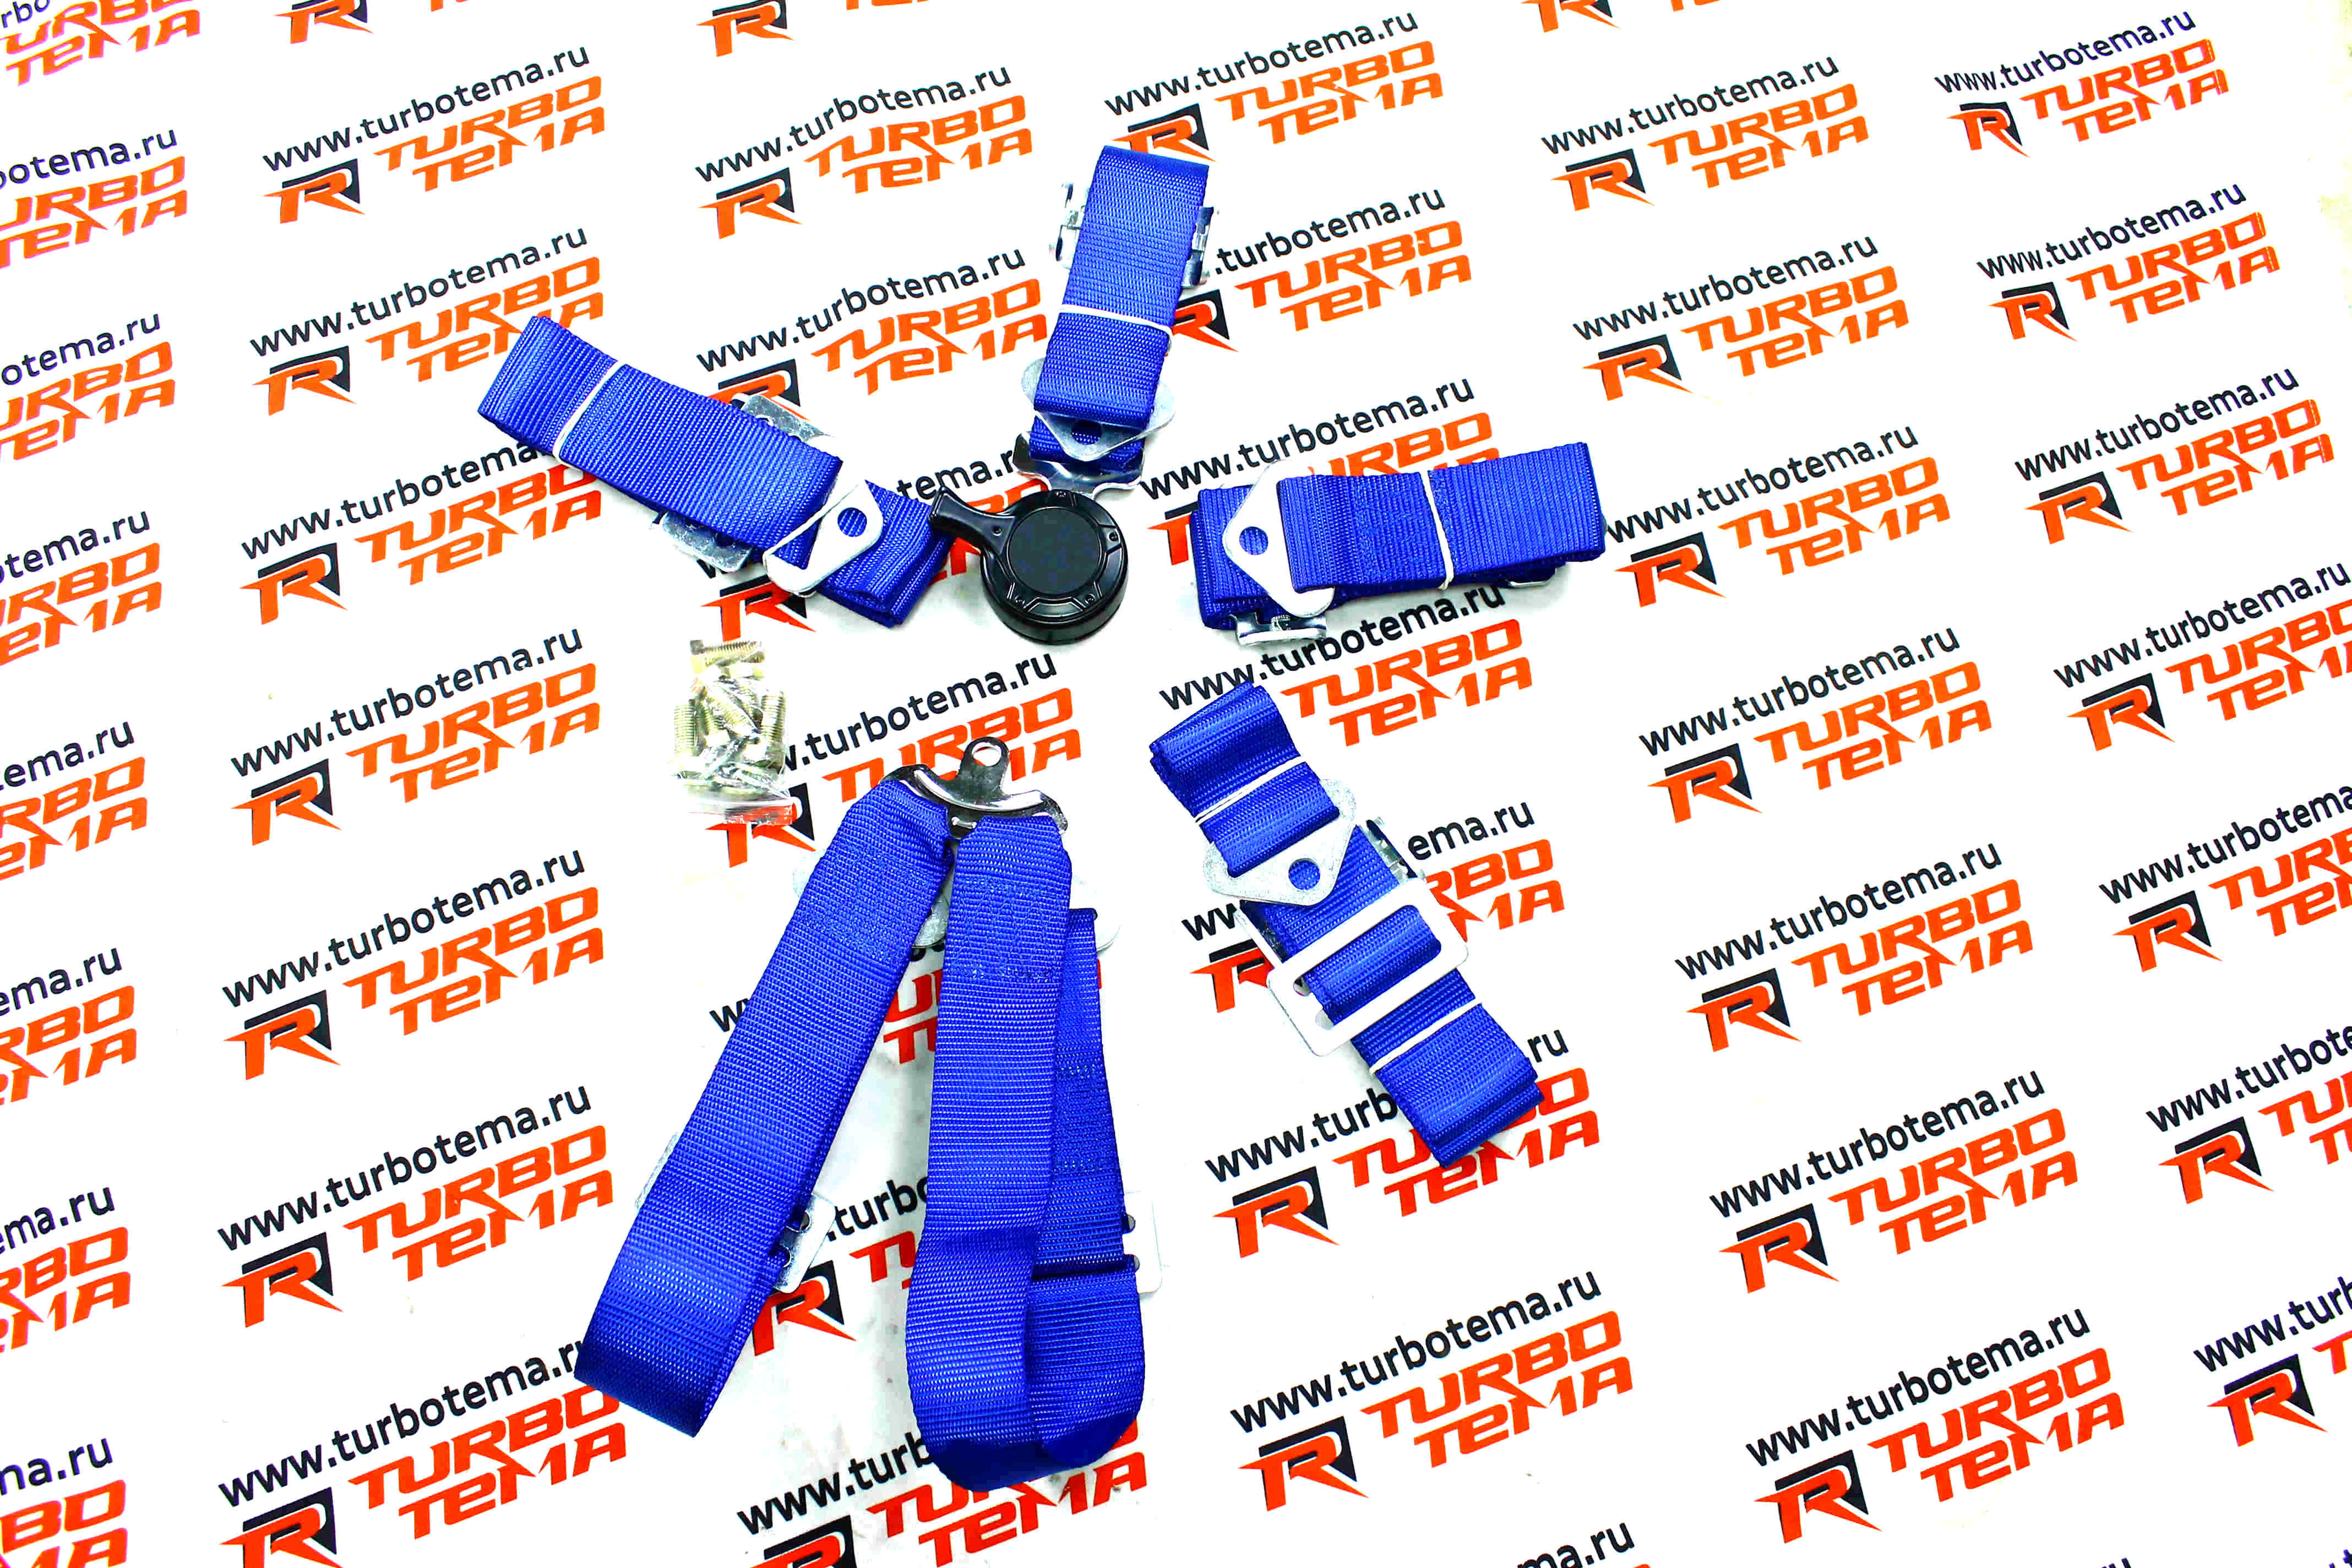 Ремни безопасности "TURBOTEMA" 6-х точечные, 2" ширина, быстросъемные (синие) JBR4001-6